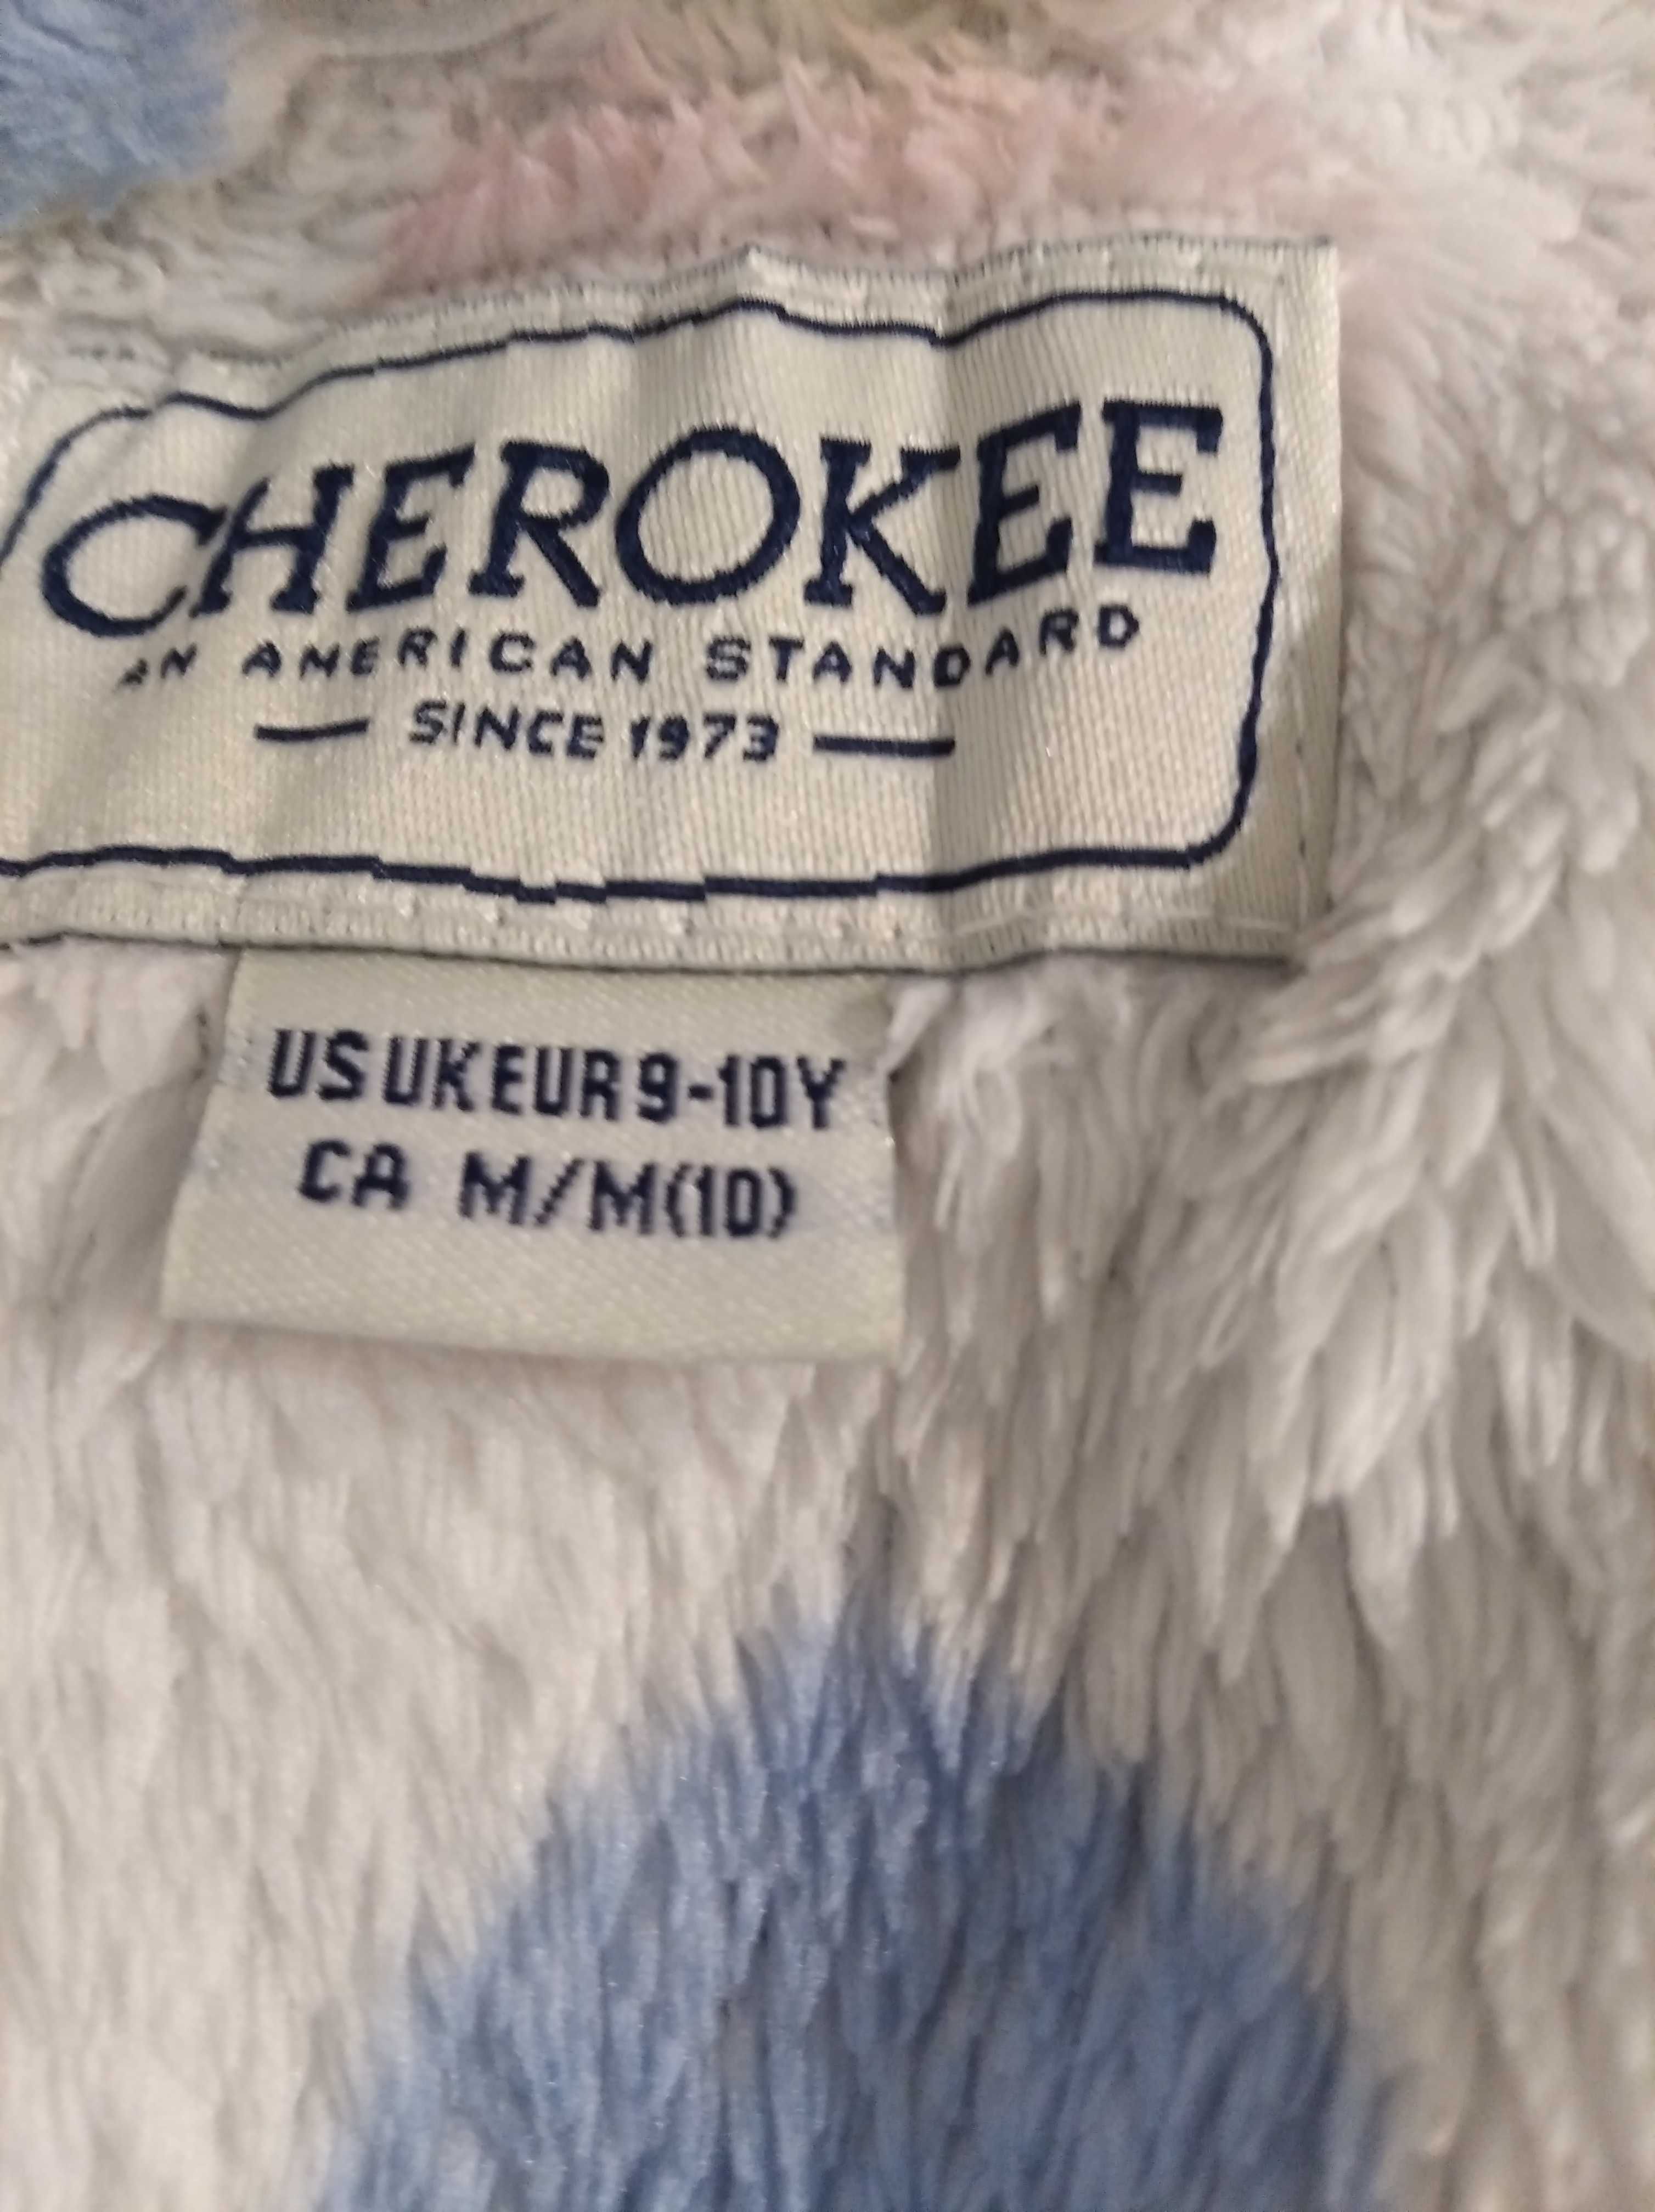 Мягкий, пушистый флисовый халат фирмы «Cherokee», р. 9-10 лет,рост 140